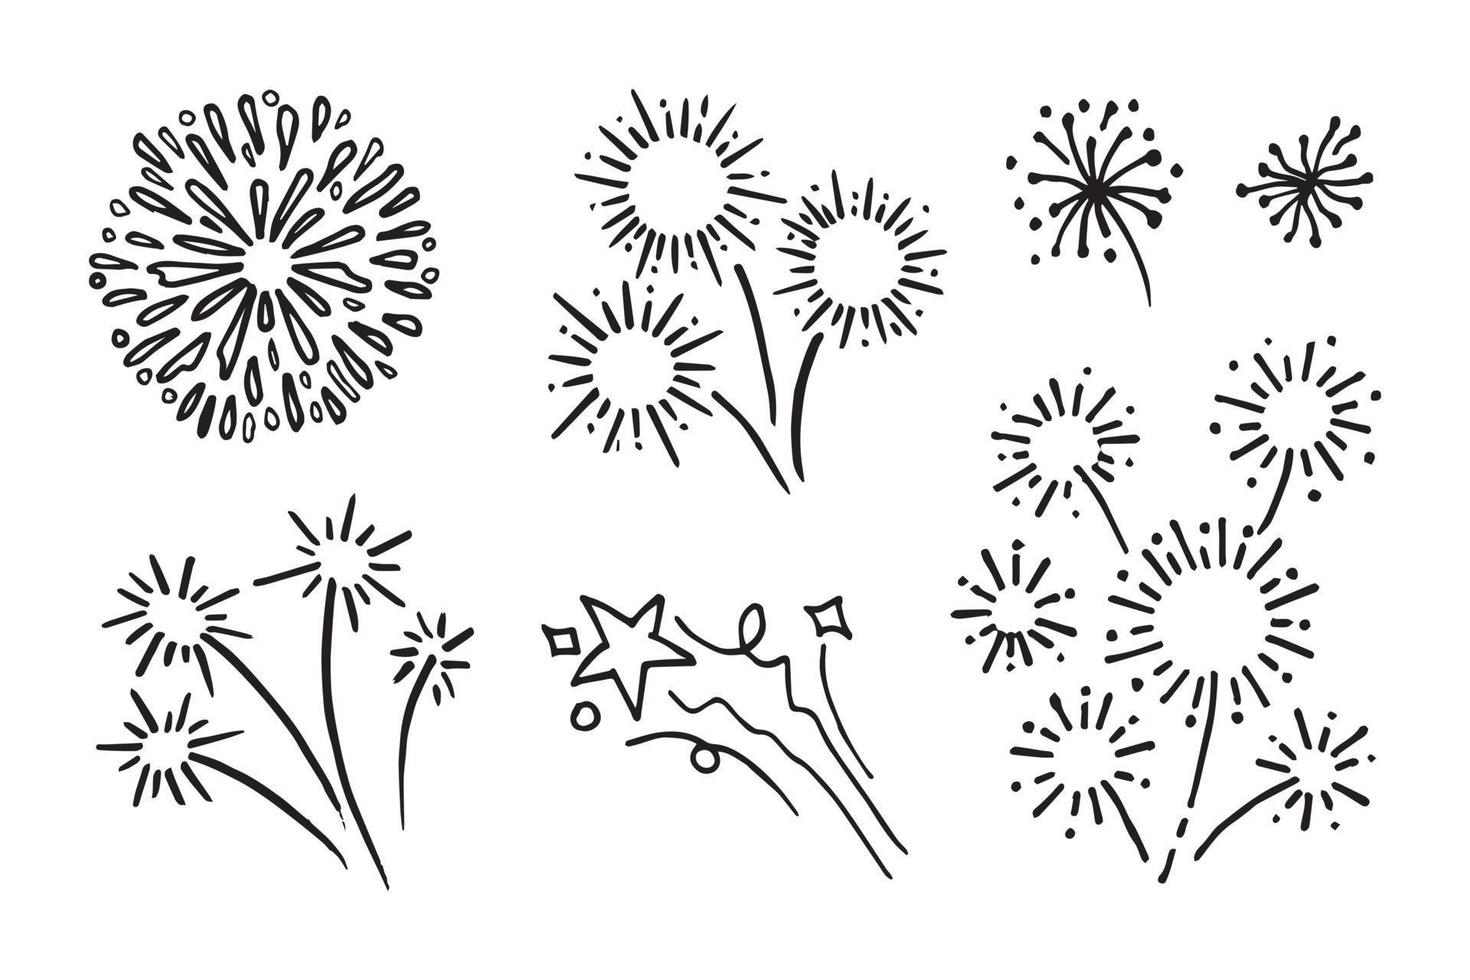 fuegos artificiales, dibujado a mano starburst, ilustración vectorial. vector